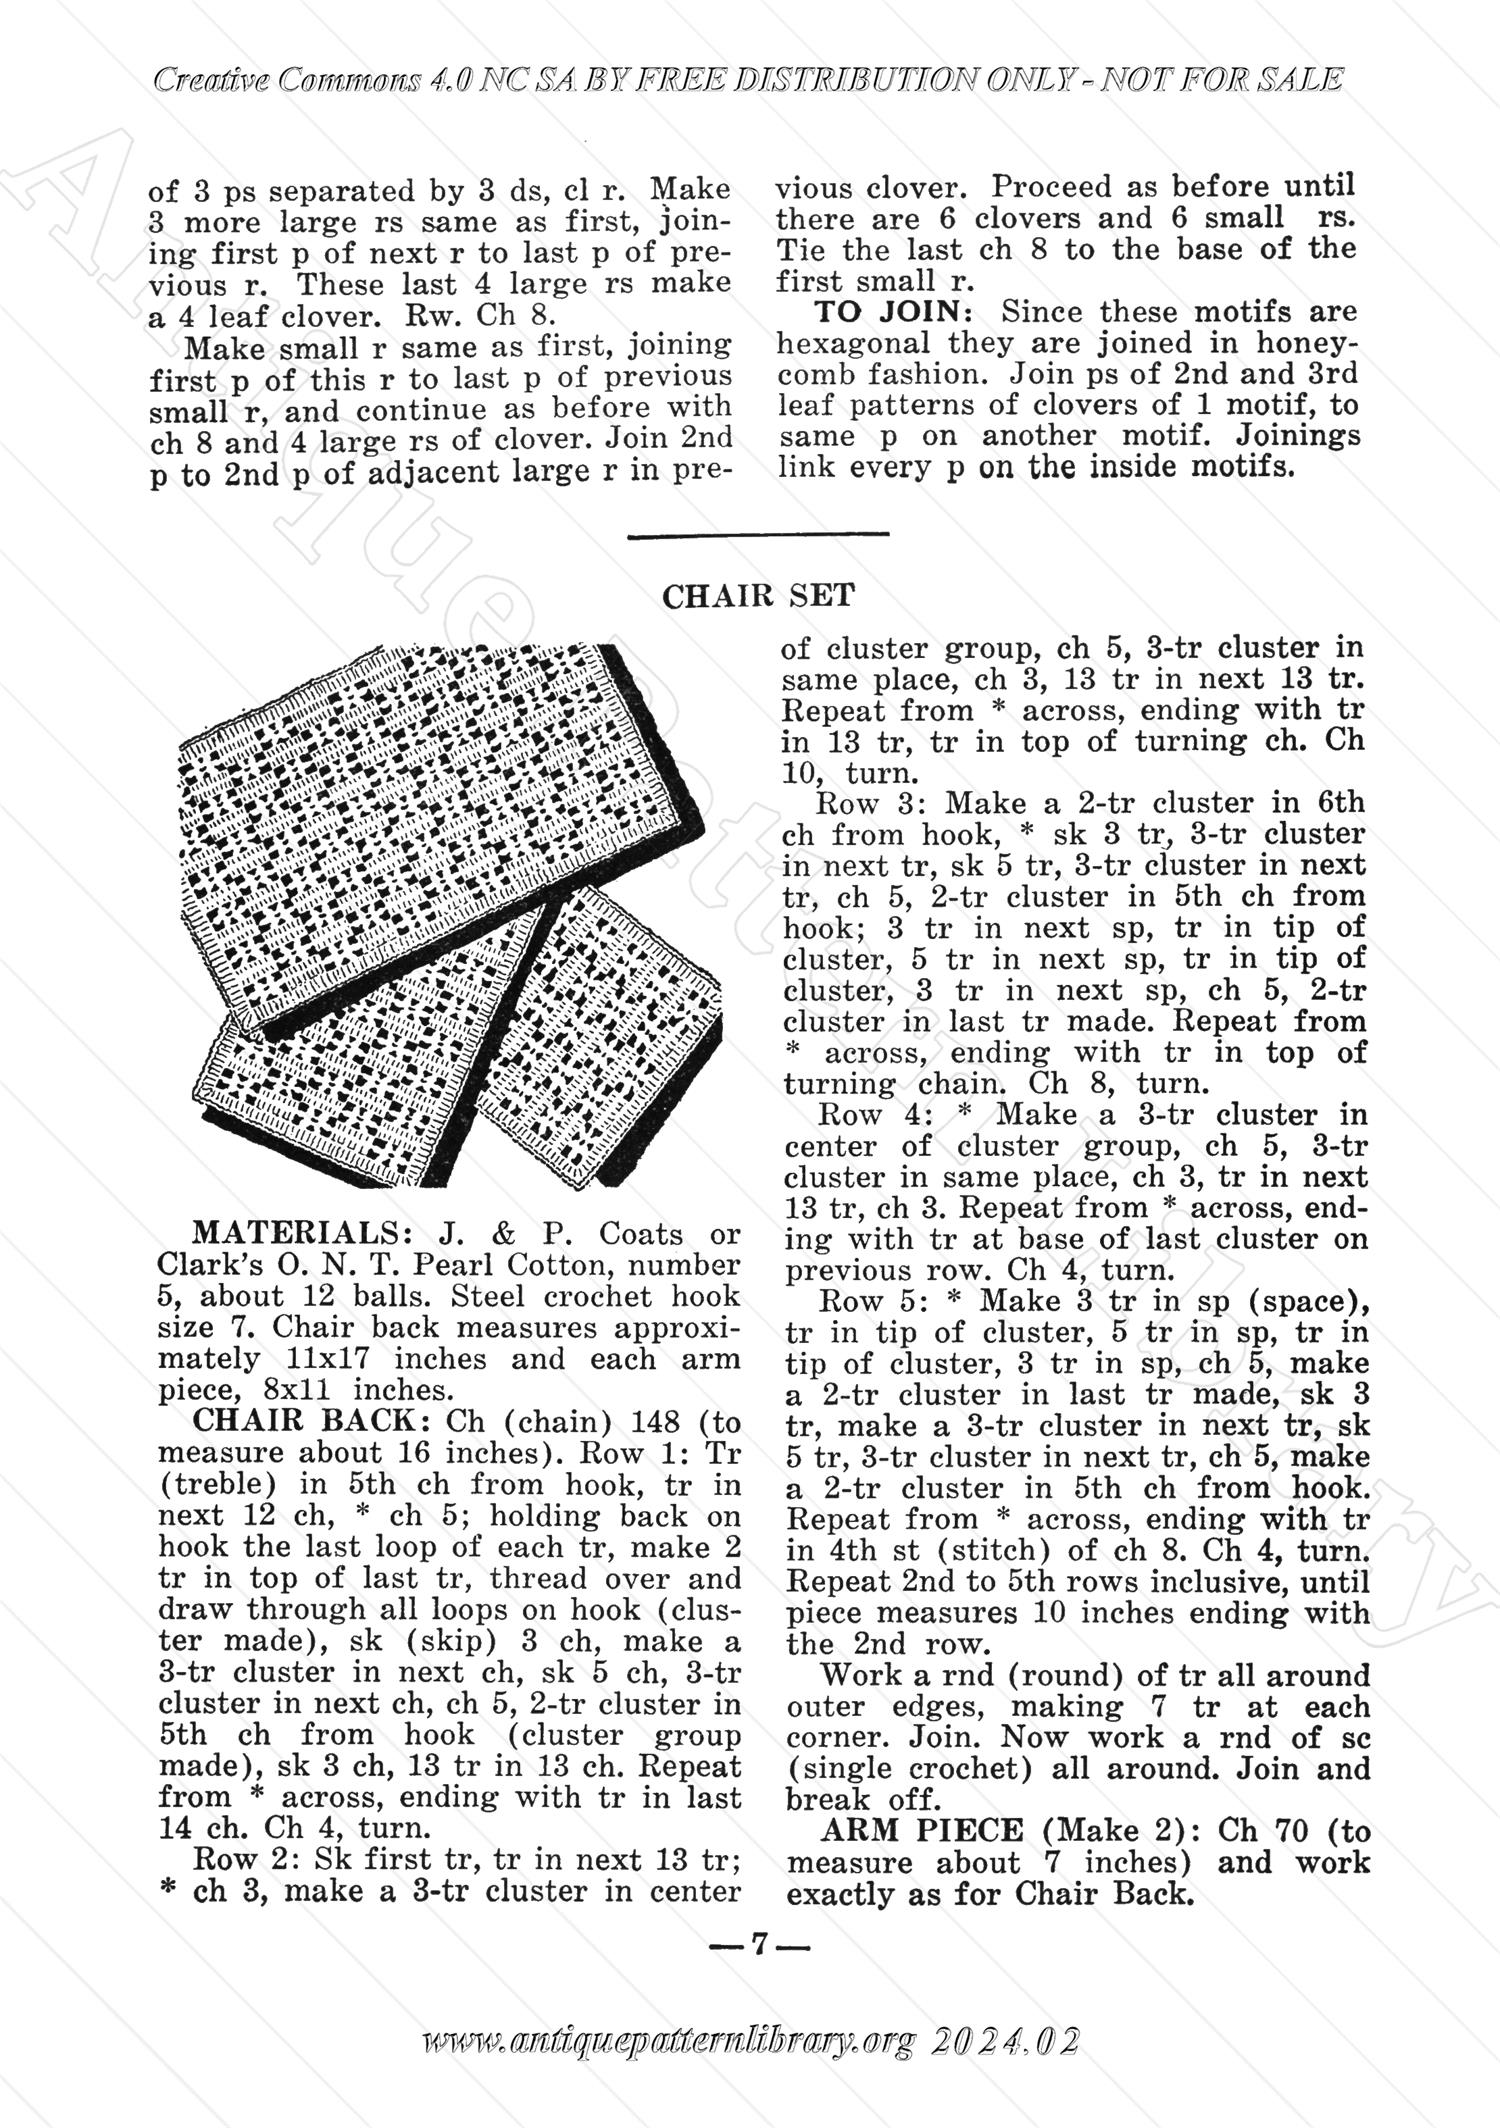 I-WB123 The Workbasket Volume 12 Number 3 December 2-935